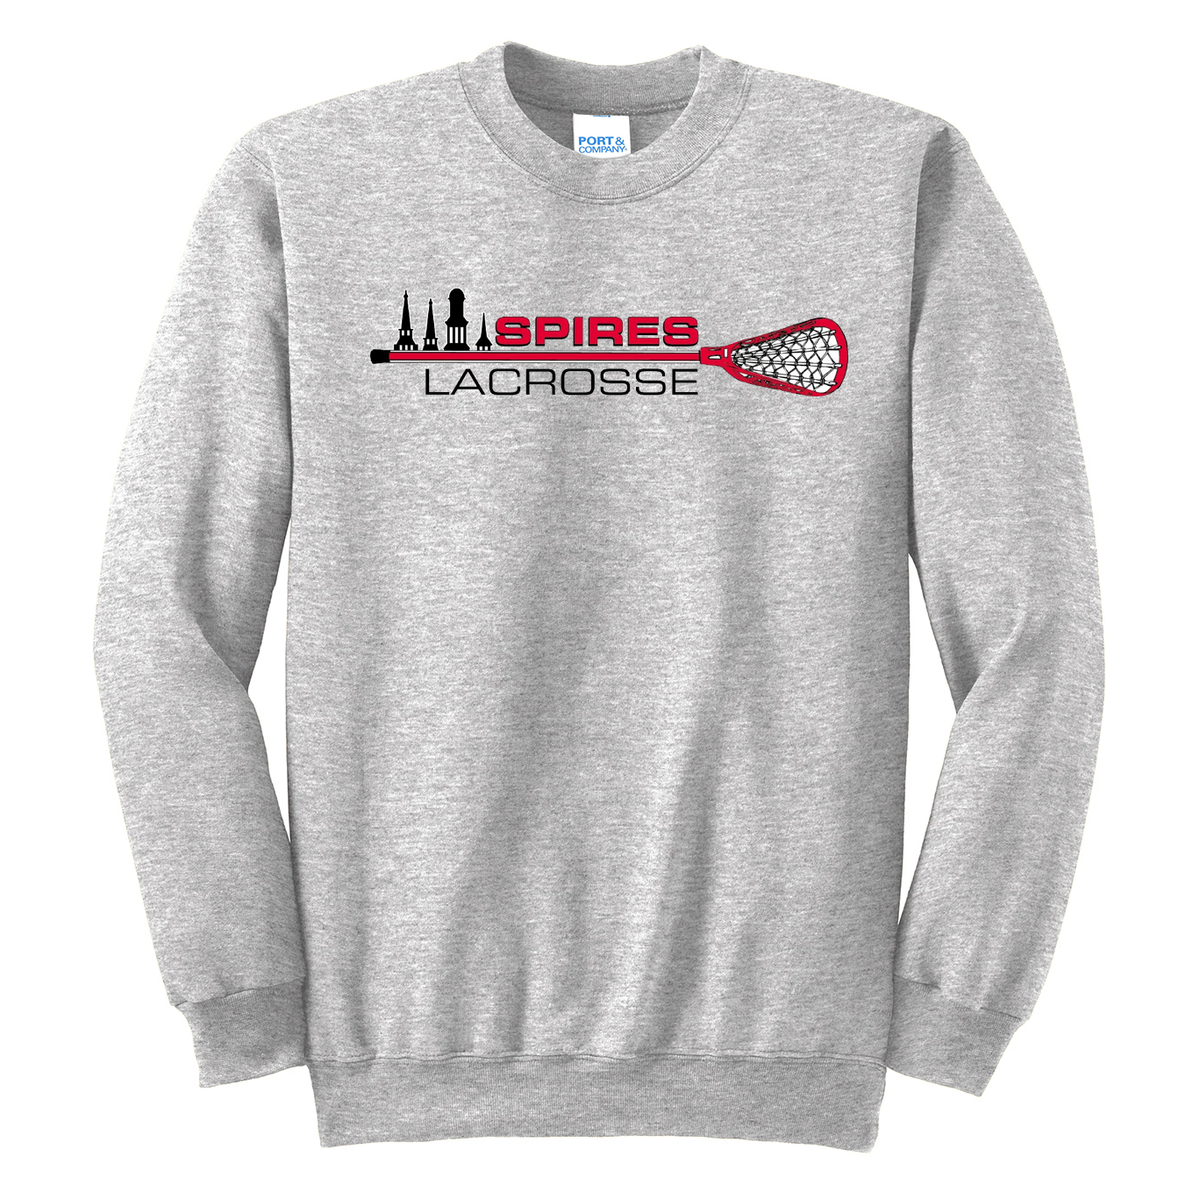 Spires Lacrosse Crew Neck Sweater